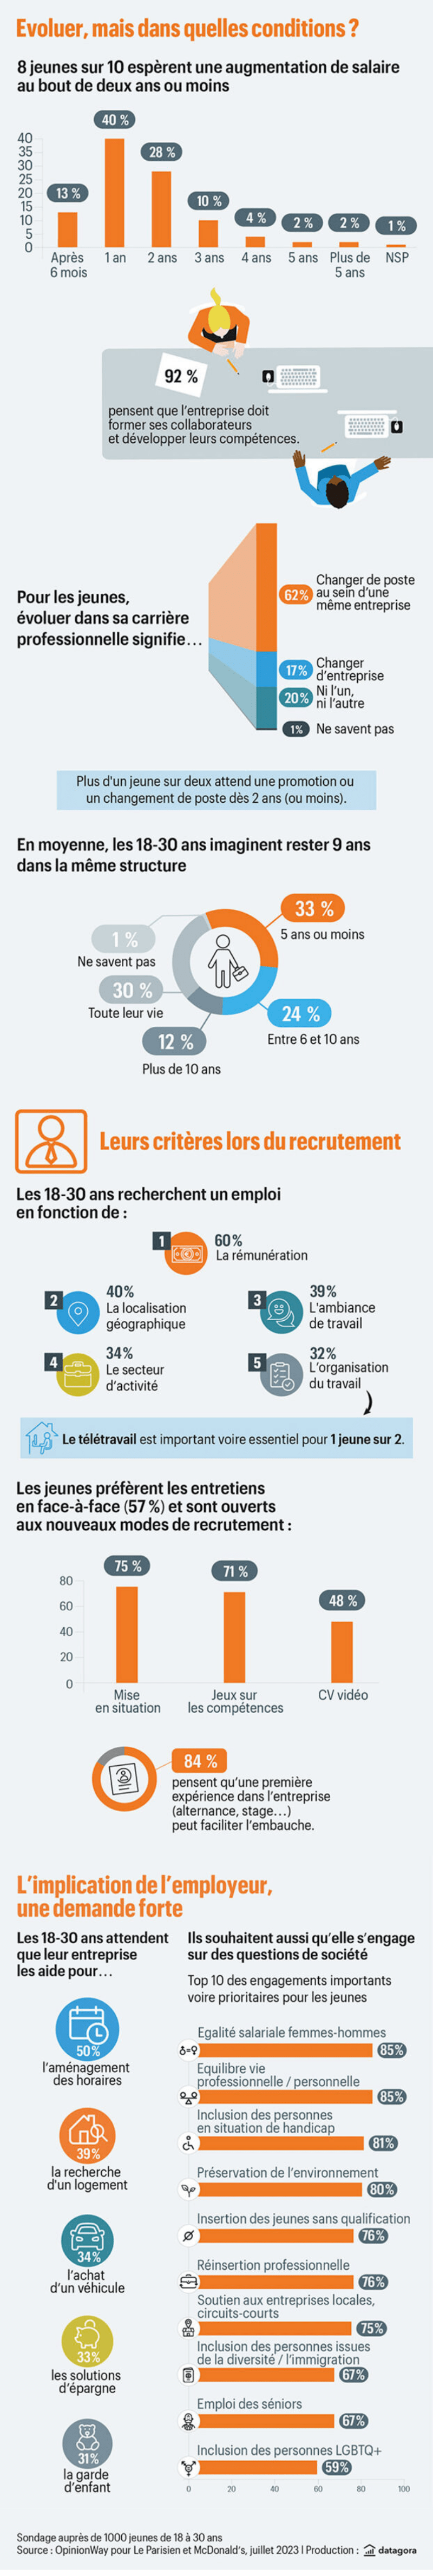 Salaire, recrutement, valeurs… Ce qu'attendent réellement les jeunes du marché du travail - infographie McDonalds et Le Parisien